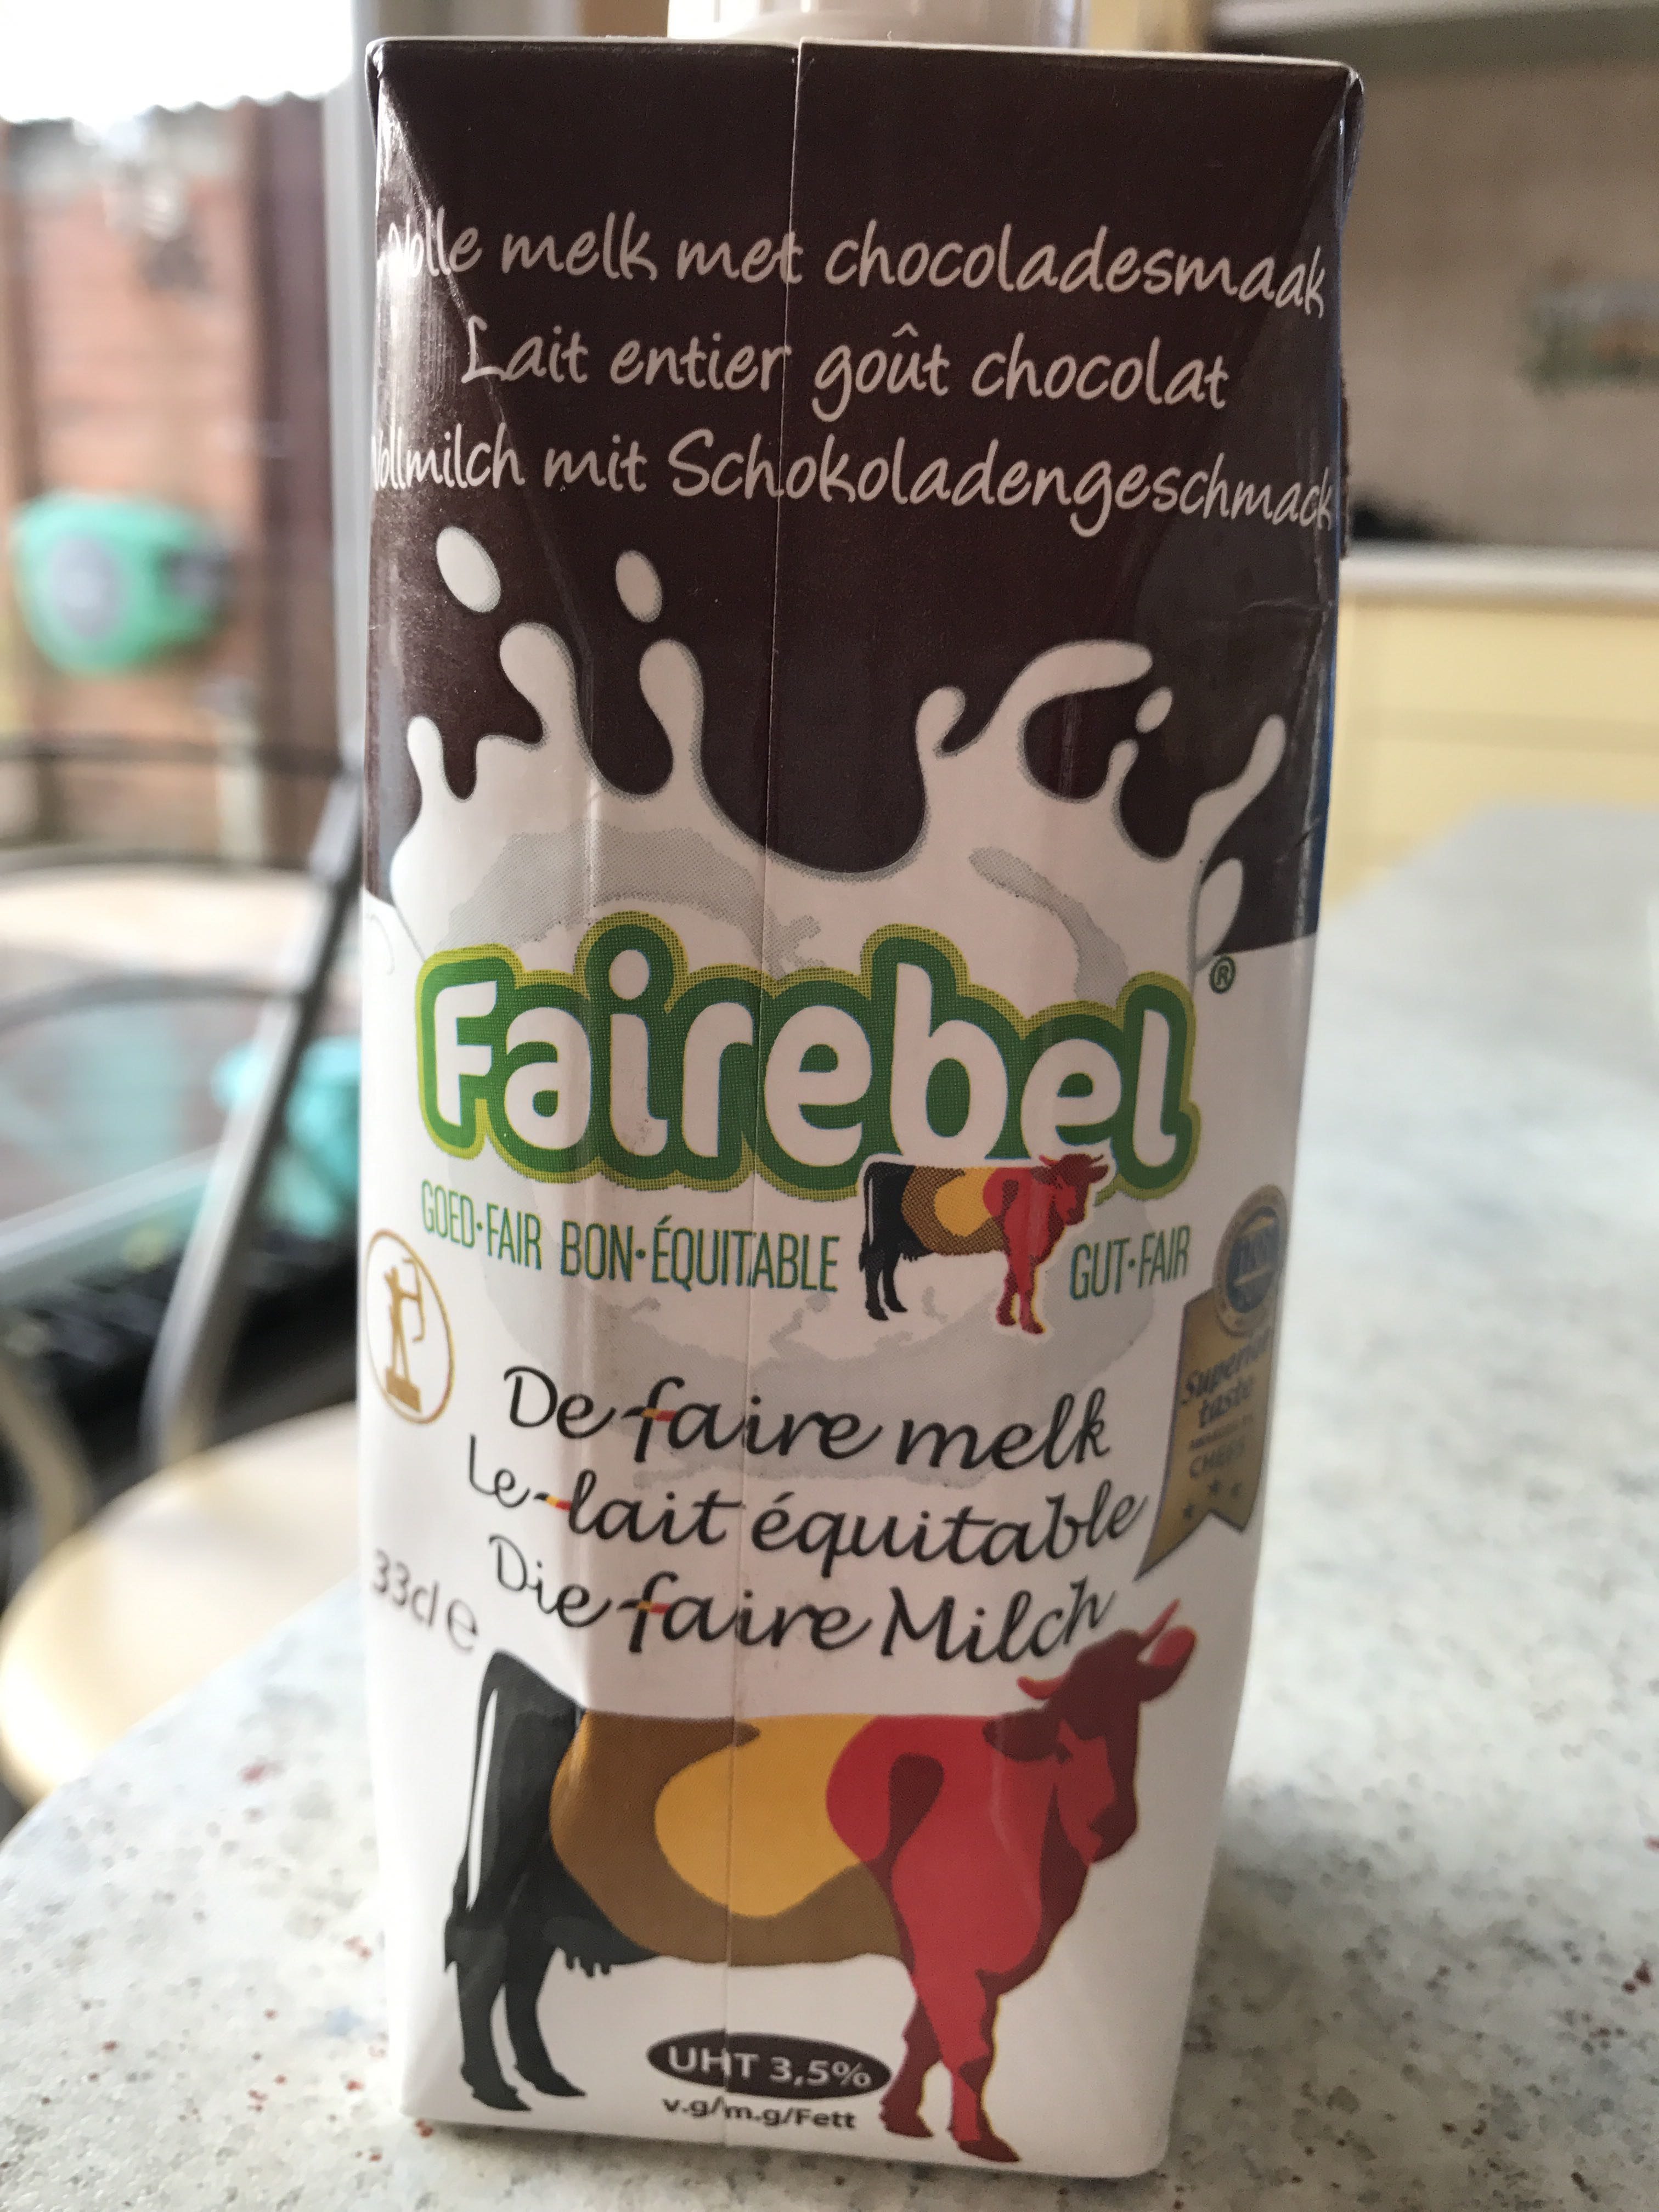 Lait entier goût chocolat - Le lait équitable - Product - fr